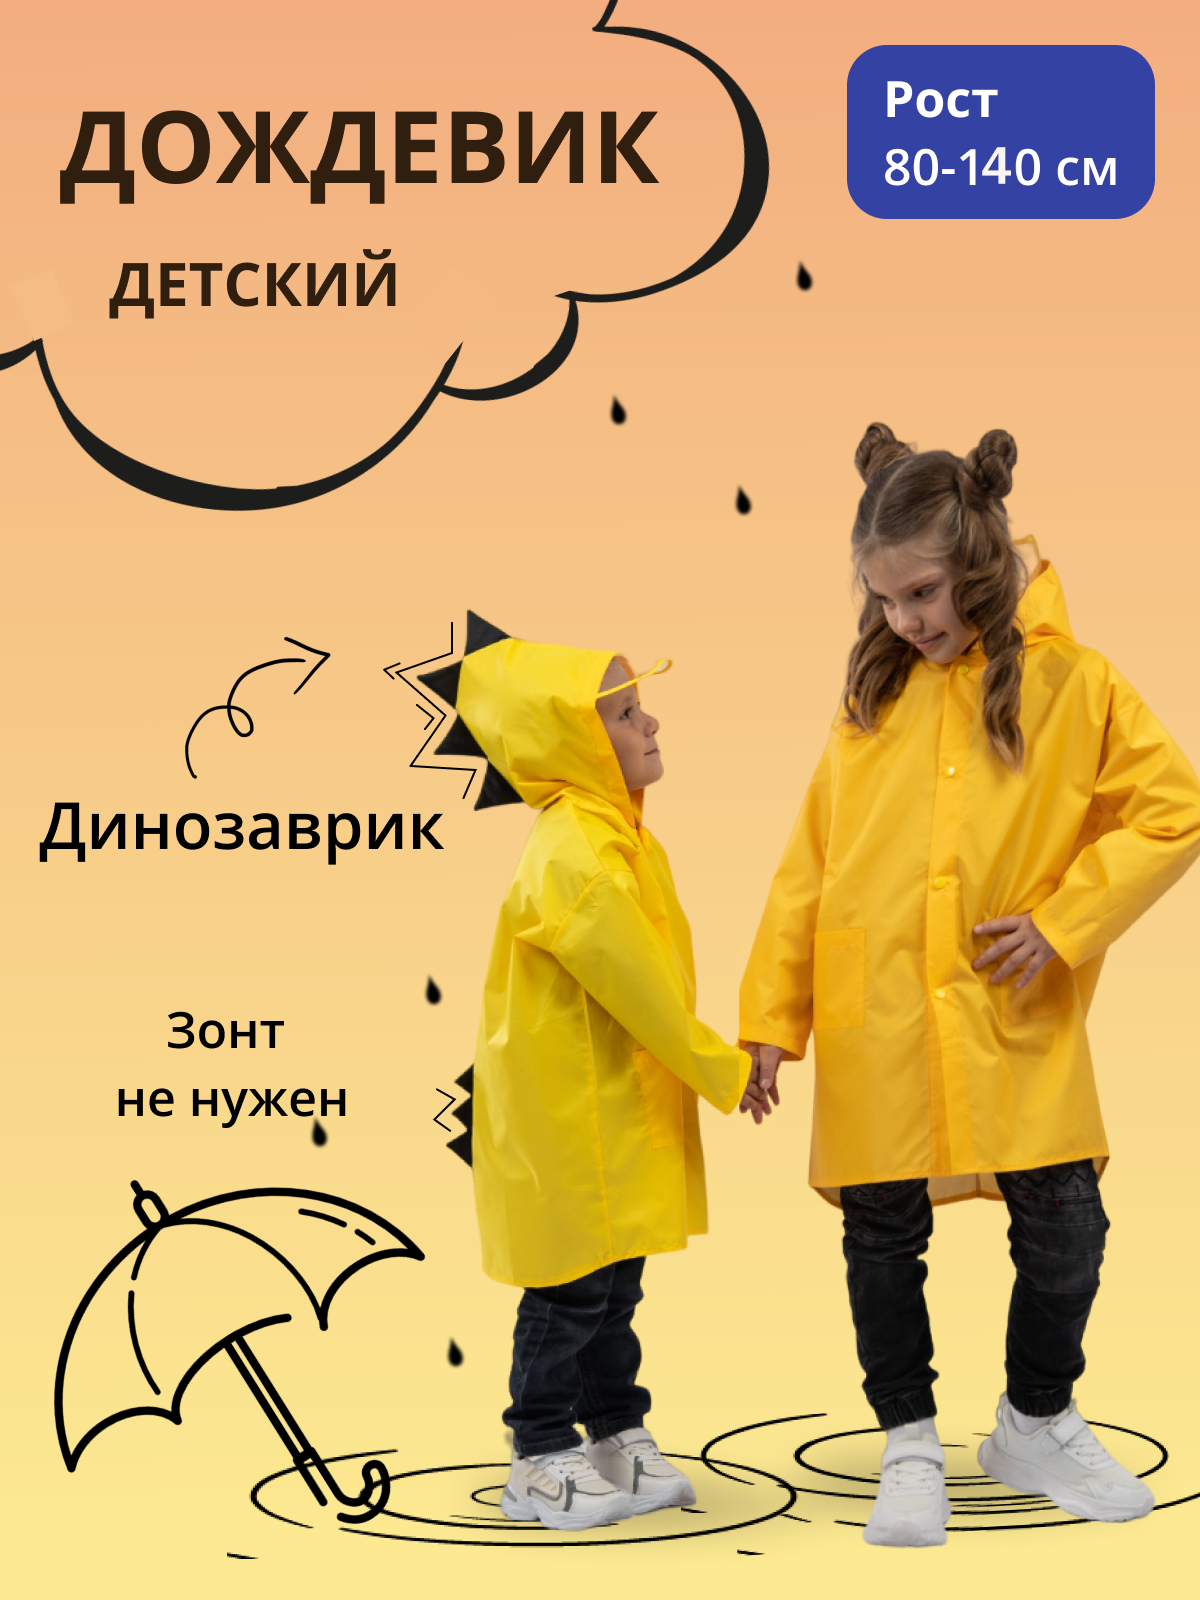 Дождевик детский Под дождем 122855956, желтый, 110 дождевик детский под дождем 122855956 желтый 92